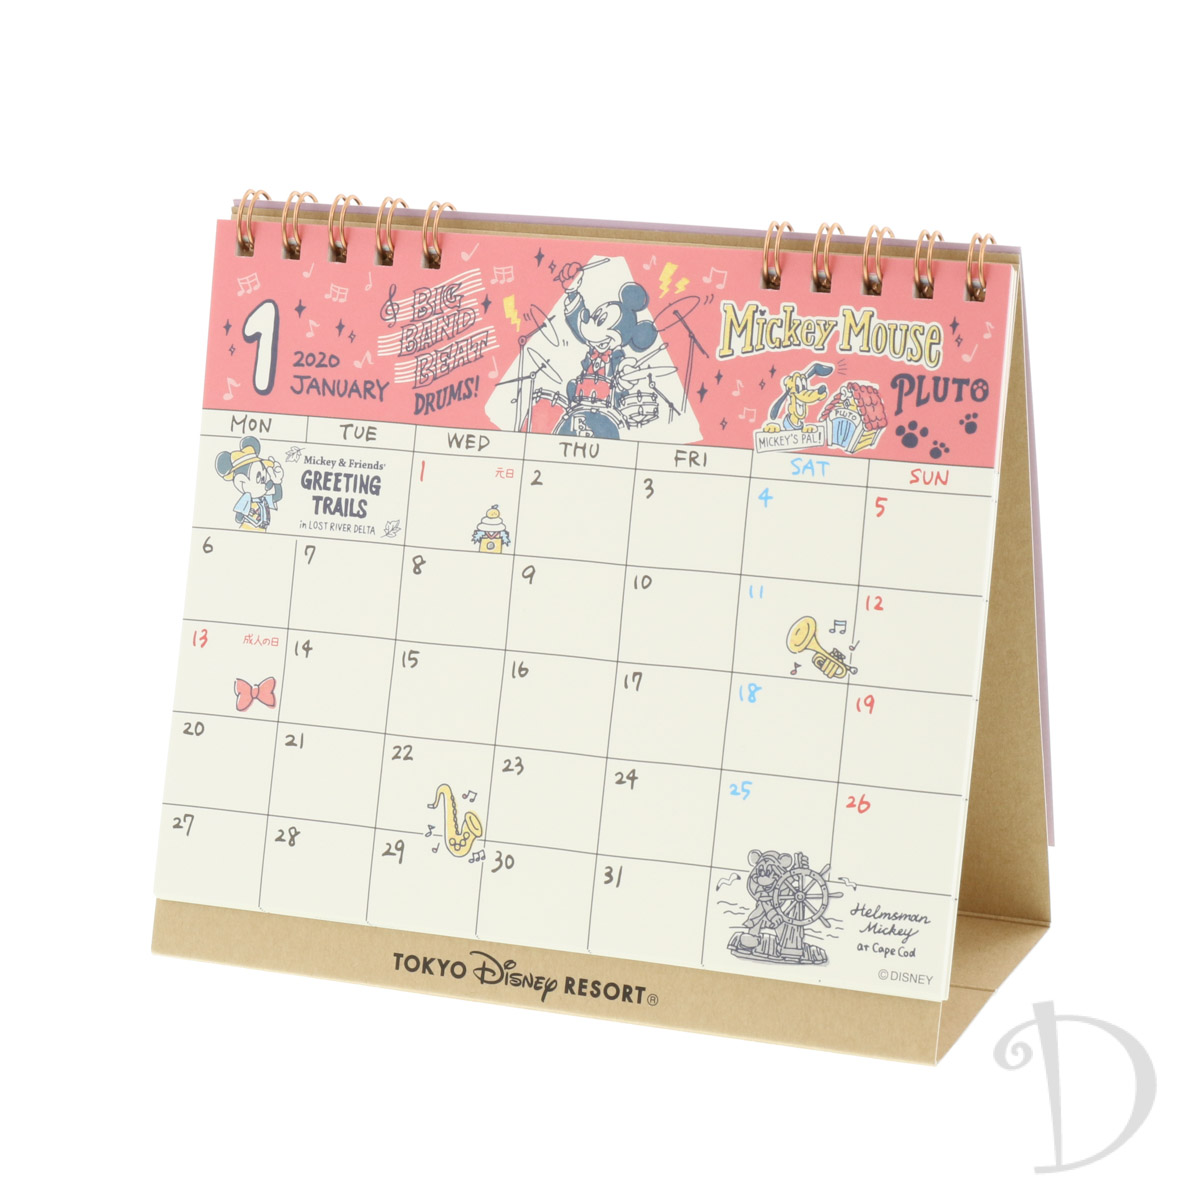 両パークのイラスト満載 東京ディズニーリゾート 年カレンダー 手帳 Dtimes